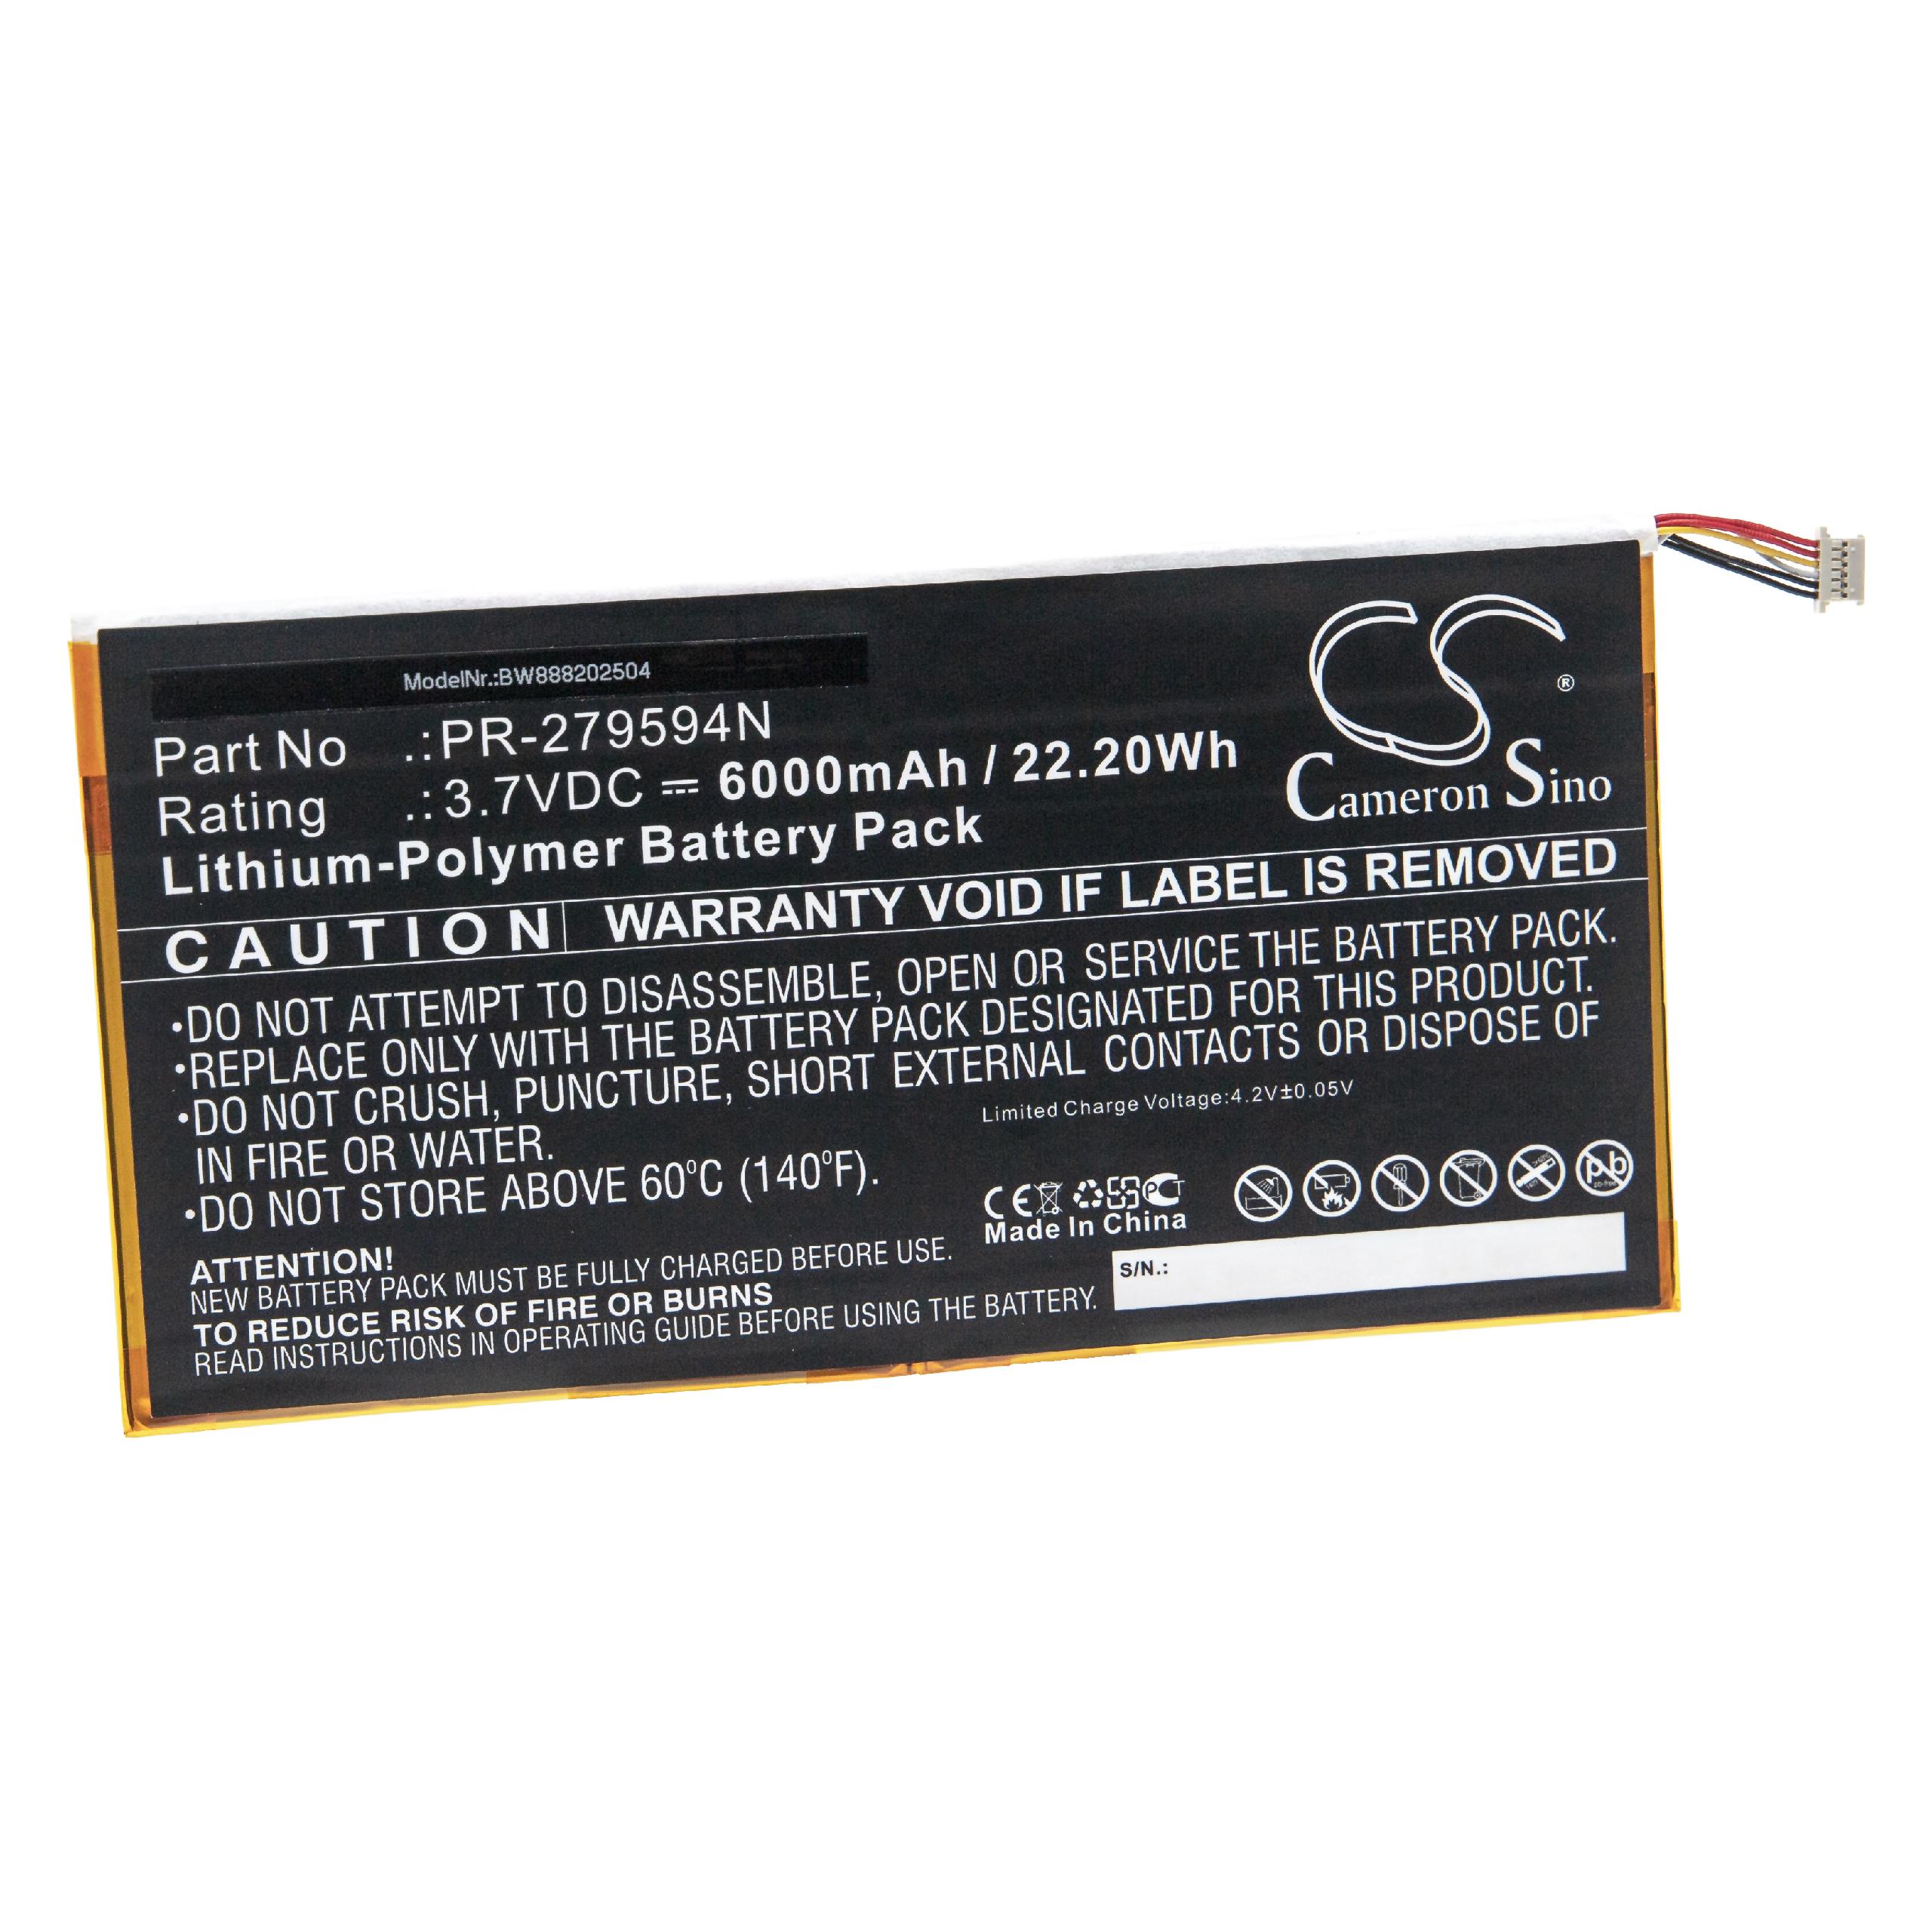 Batterie remplace Acer PR-279594N(1ICP3/95/94-2), PR-279594N pour tablette - 6000mAh 3,7V Li-polymère